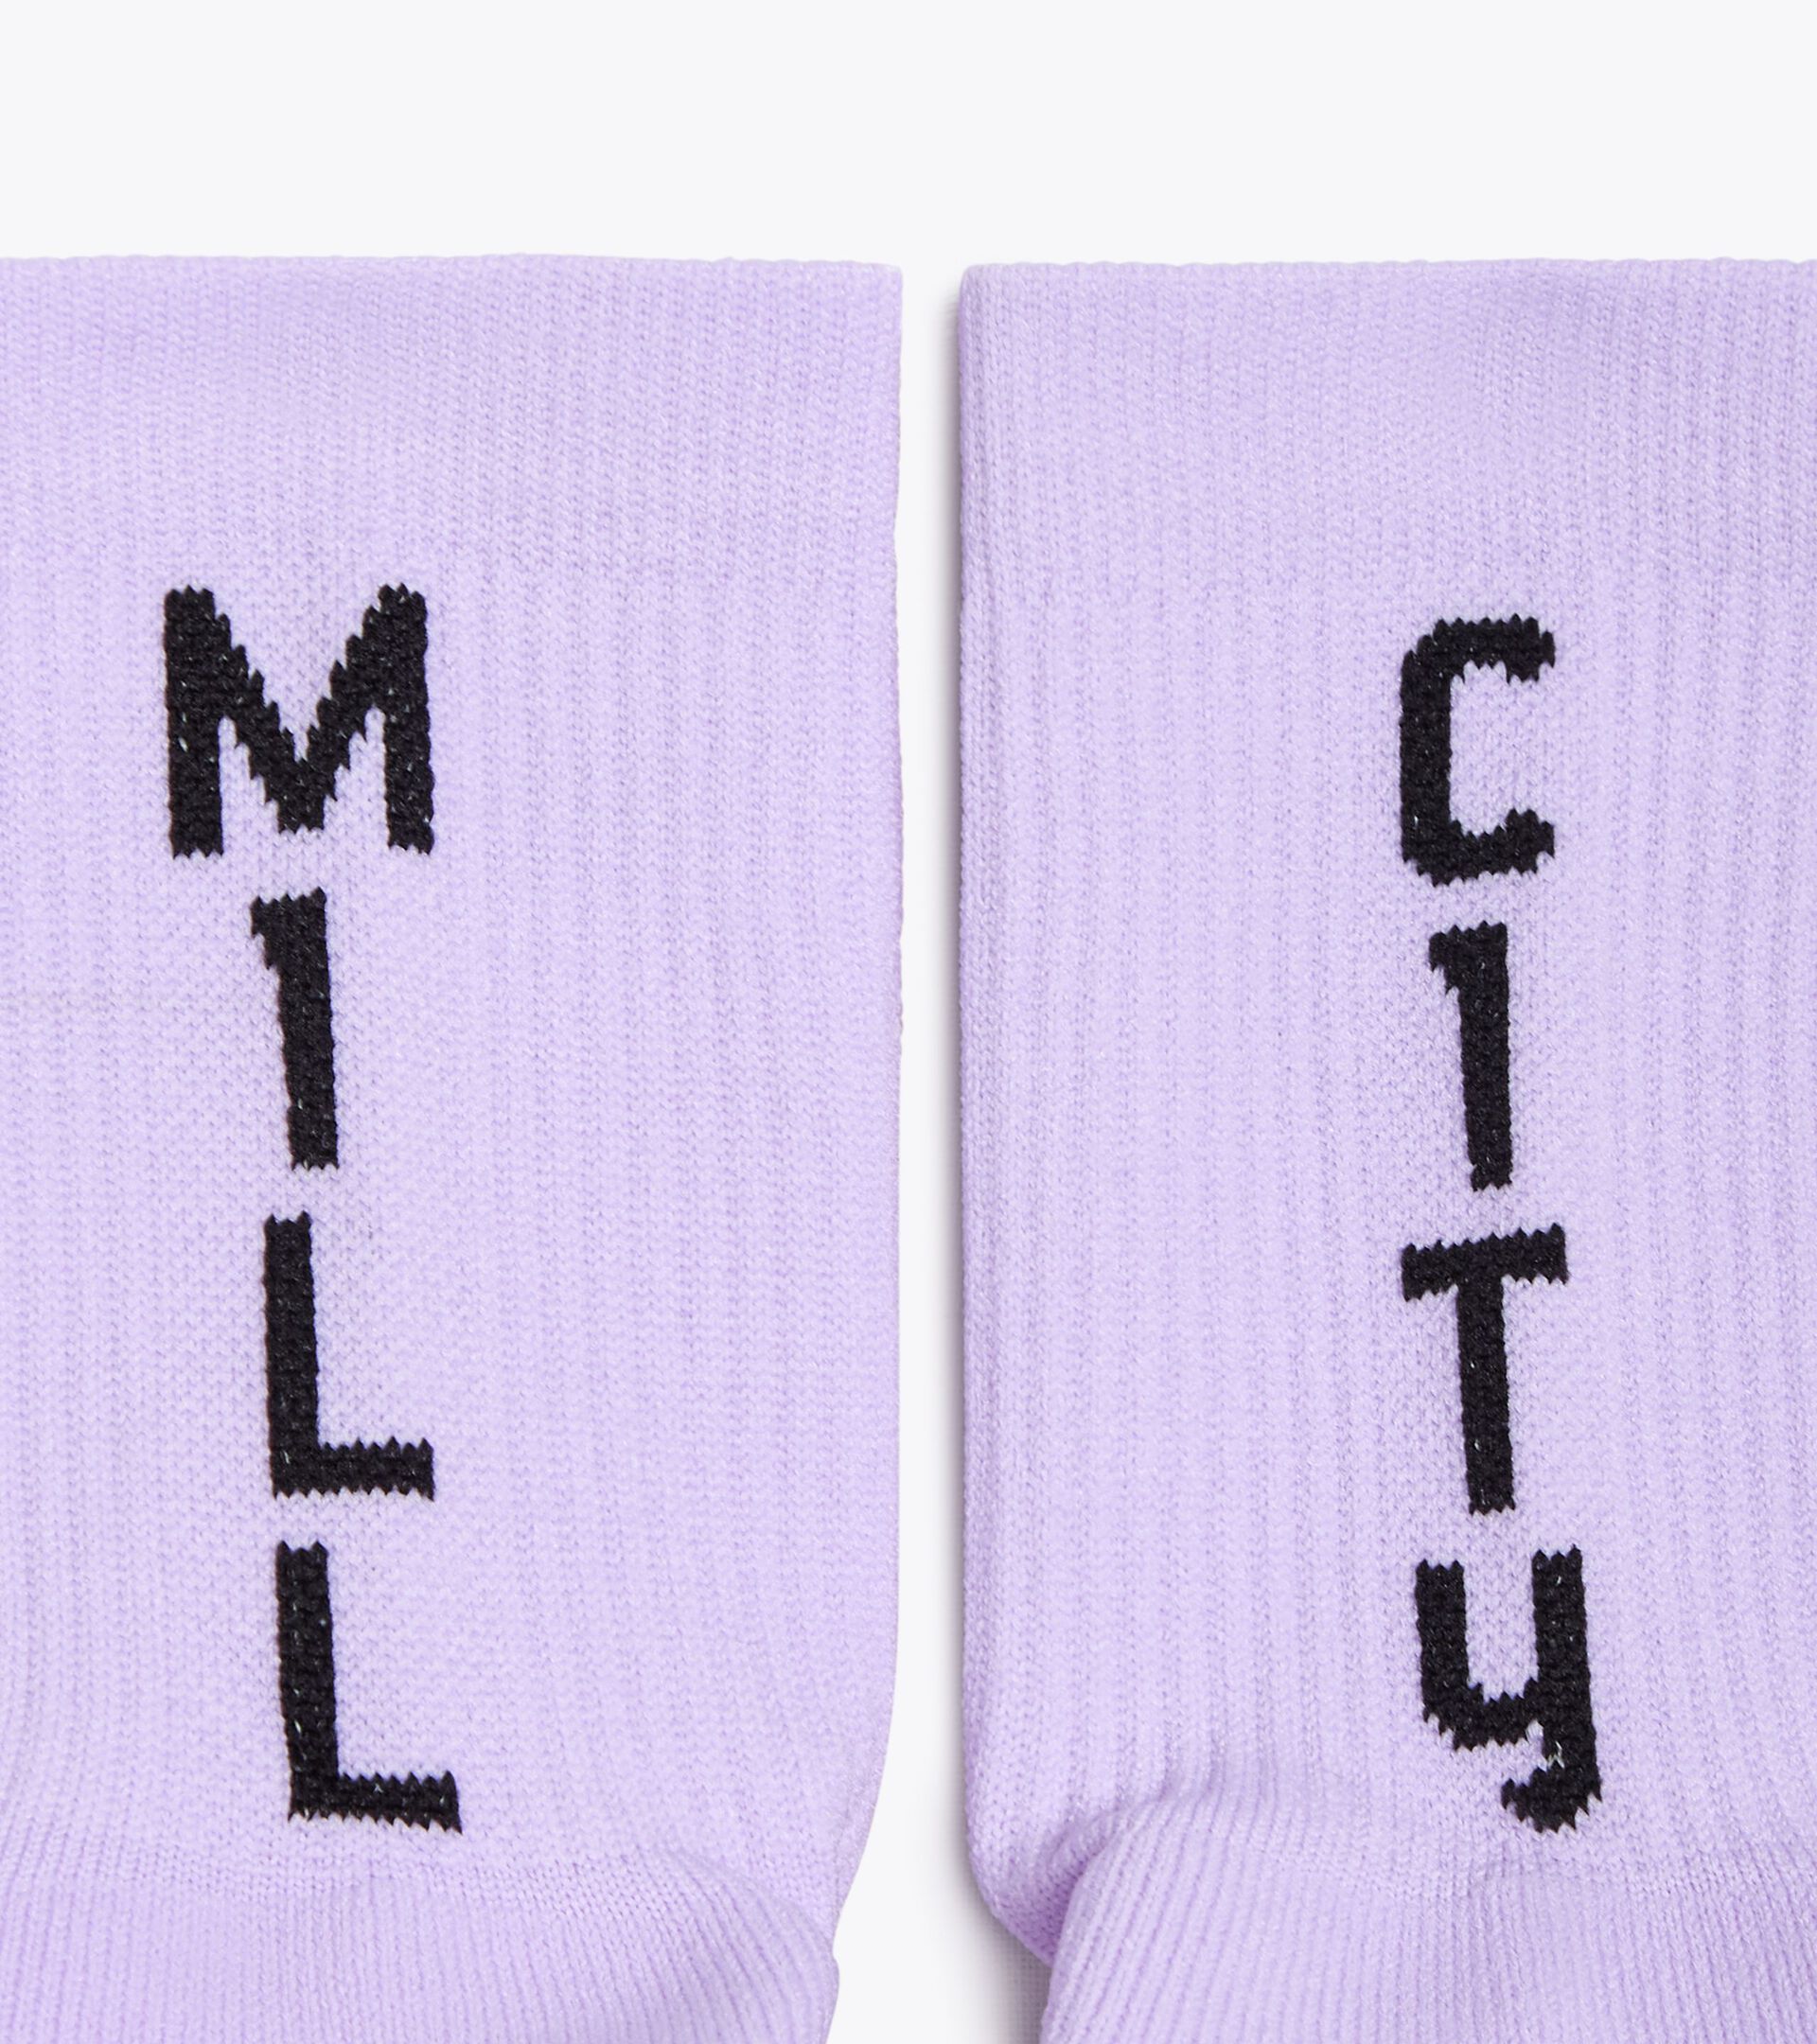 Socks - Made in Italy - gender neutral SOCKS MILL CITY VIOLET SHEER LILAC - Diadora